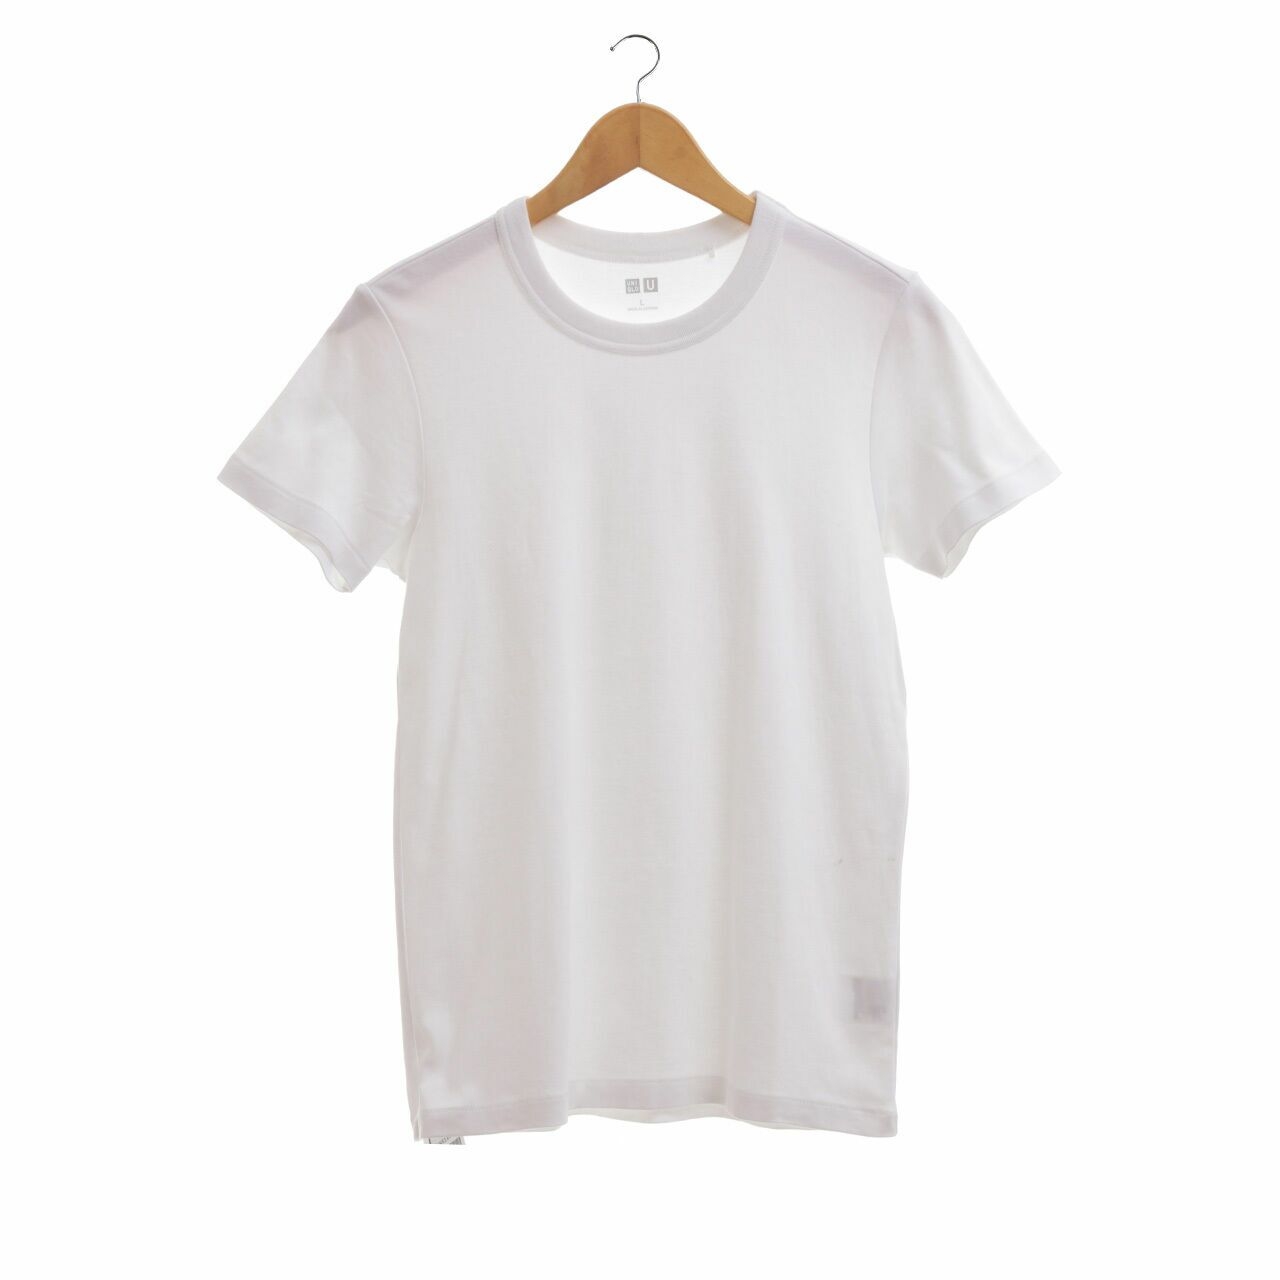 UNIQLO White Tshirt